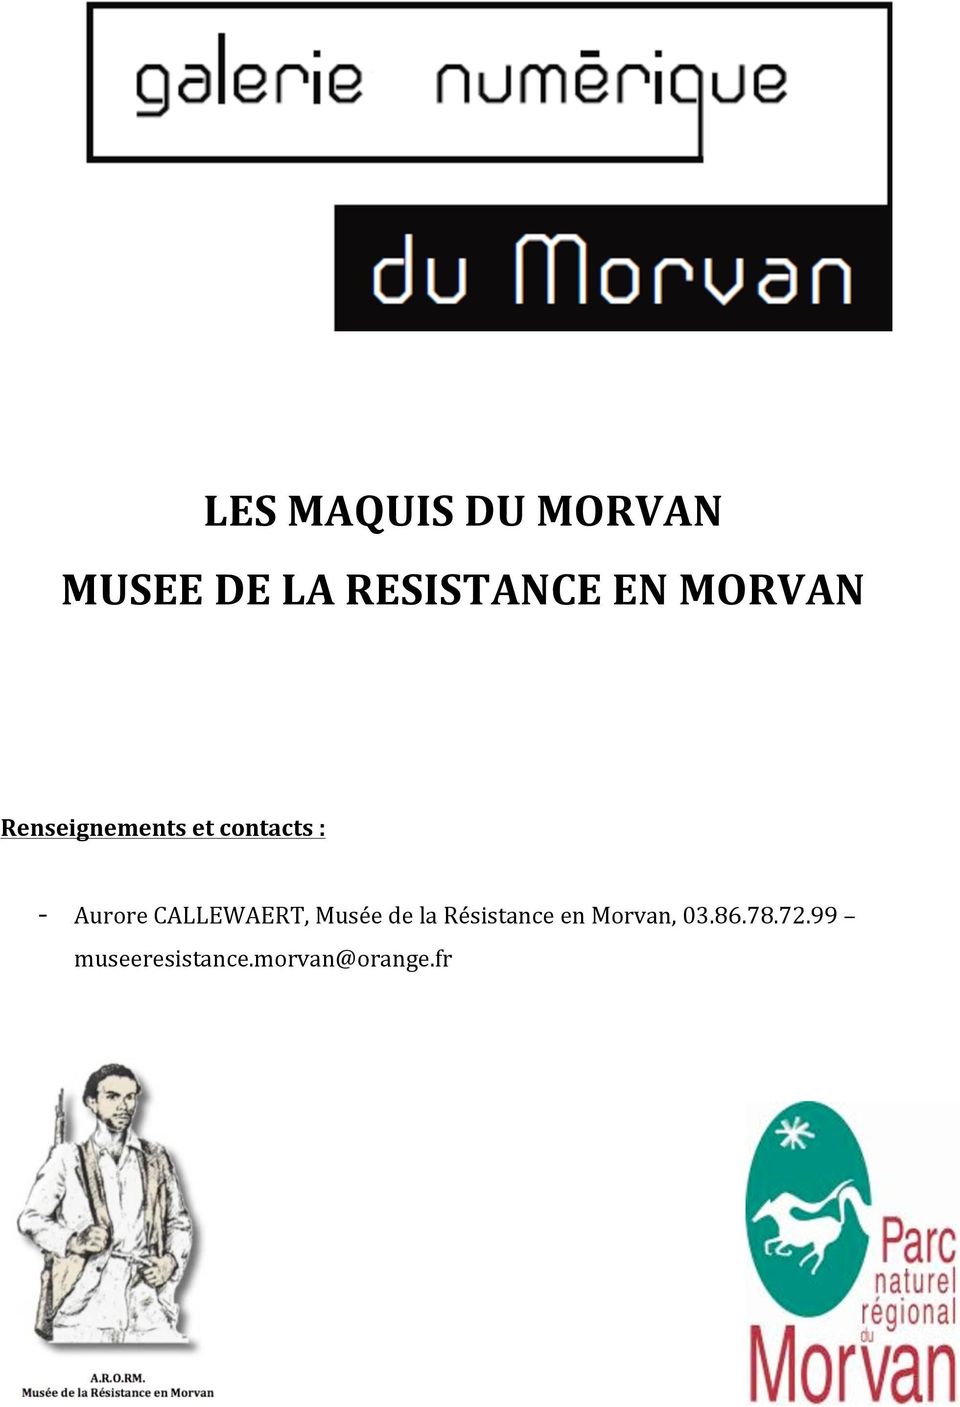 CALLEWAERT, Musée de la Résistance en Morvan,